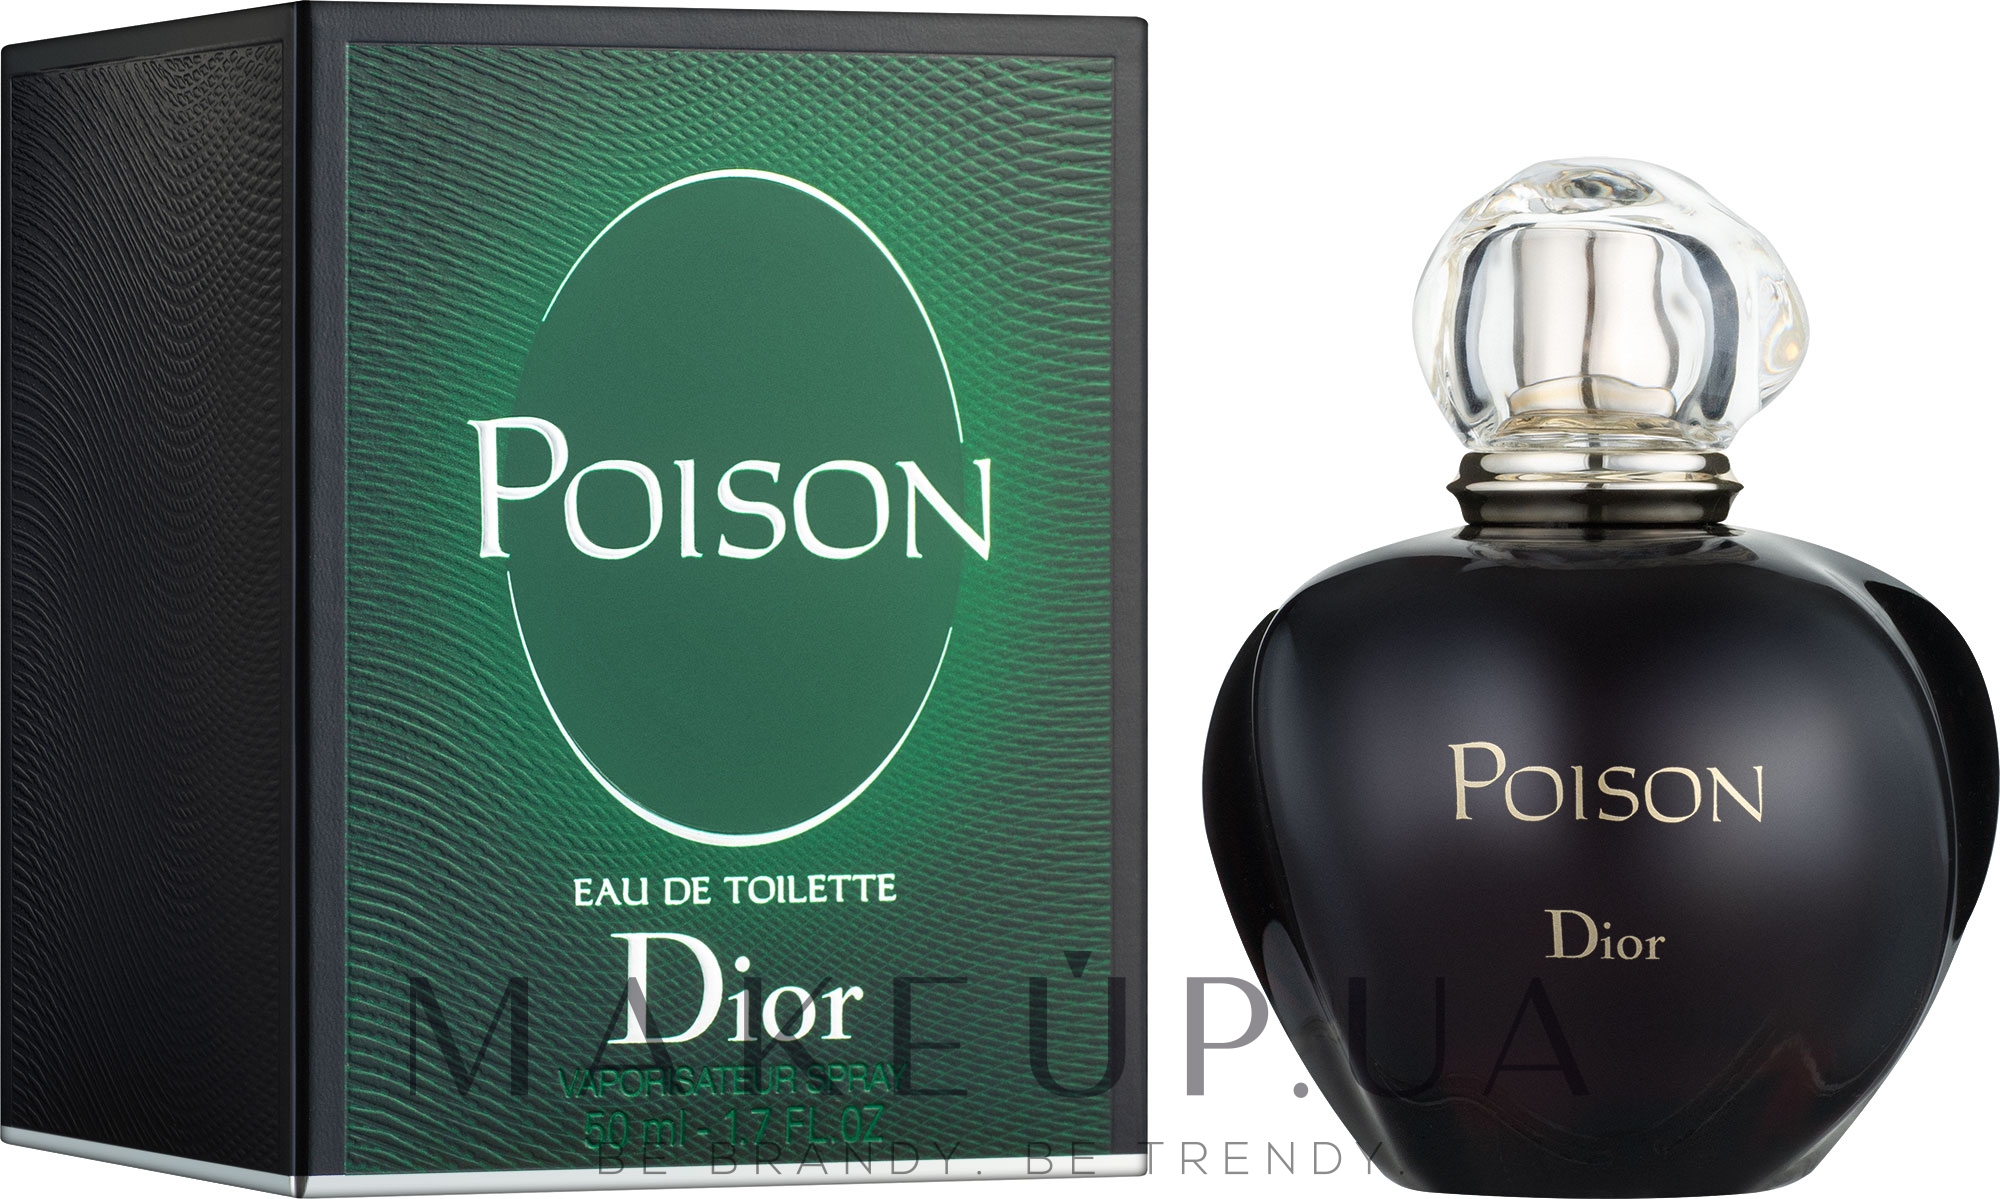 Christian Dior Poison  Купить духи Пуазон Диор  Цены Отзывы Описание